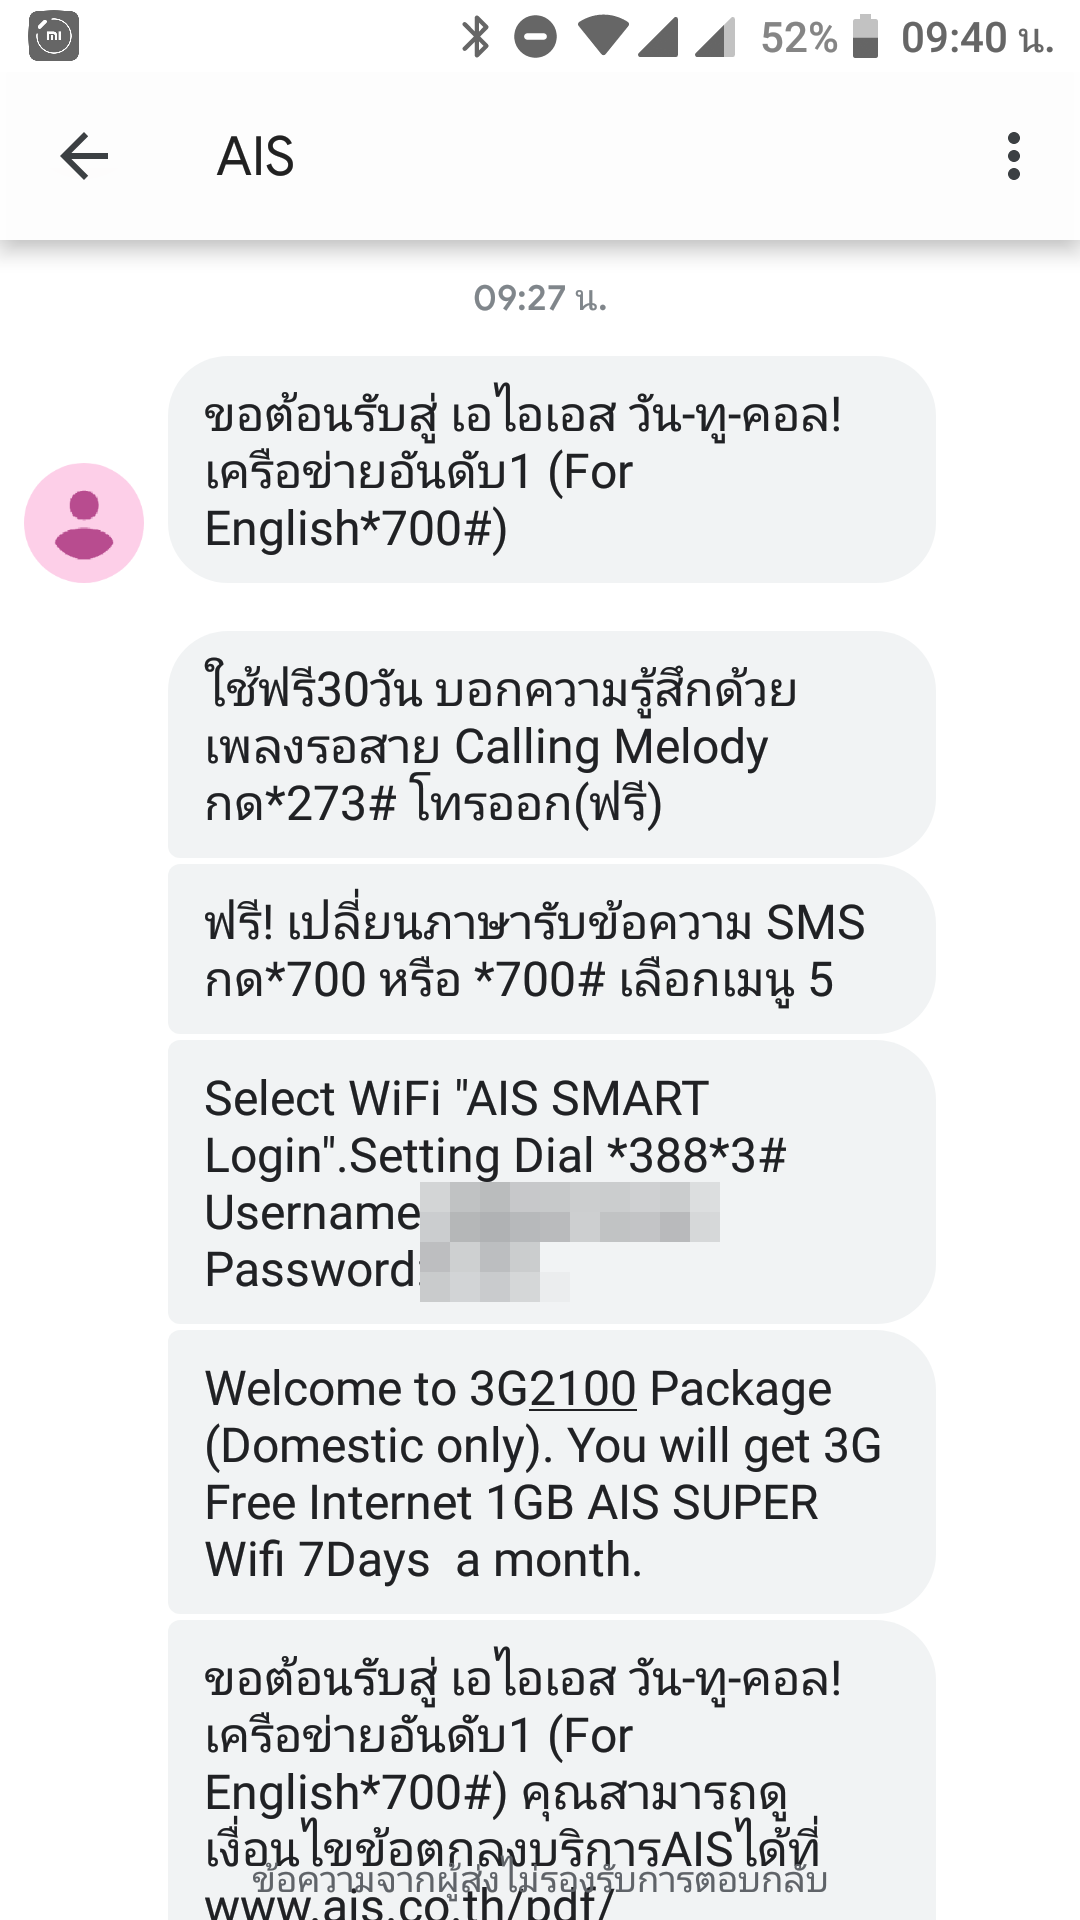 ย้ายค่ายเบอร์เดิม จาก Line Mobile กลับสู่ Ais กระบวนการทั้งหมดจบใน 24  ชั่วโมง | ปกป้อง Poakpong.Com